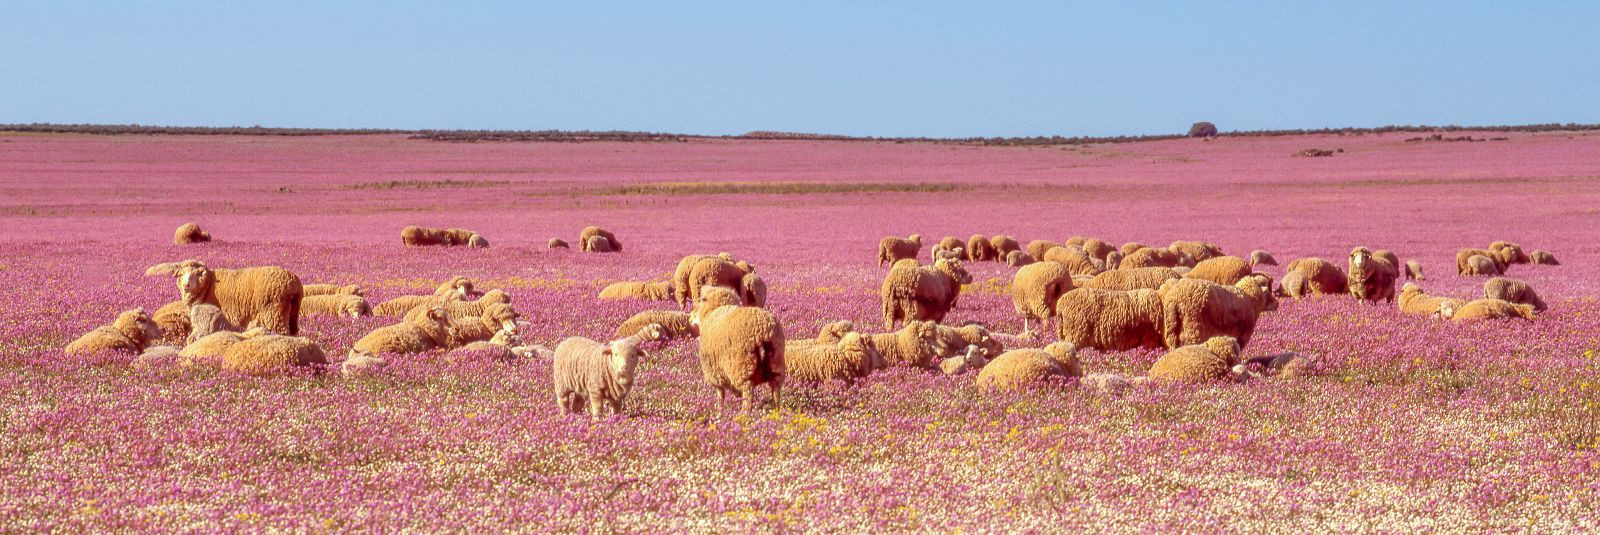 Kui räägitakse luksuslikest looduslikest kiududest, tuleb tihti esile Arles Merino lambavill. Selle erilise lambatõu villa eripära ja kvaliteet teevad sellest ü